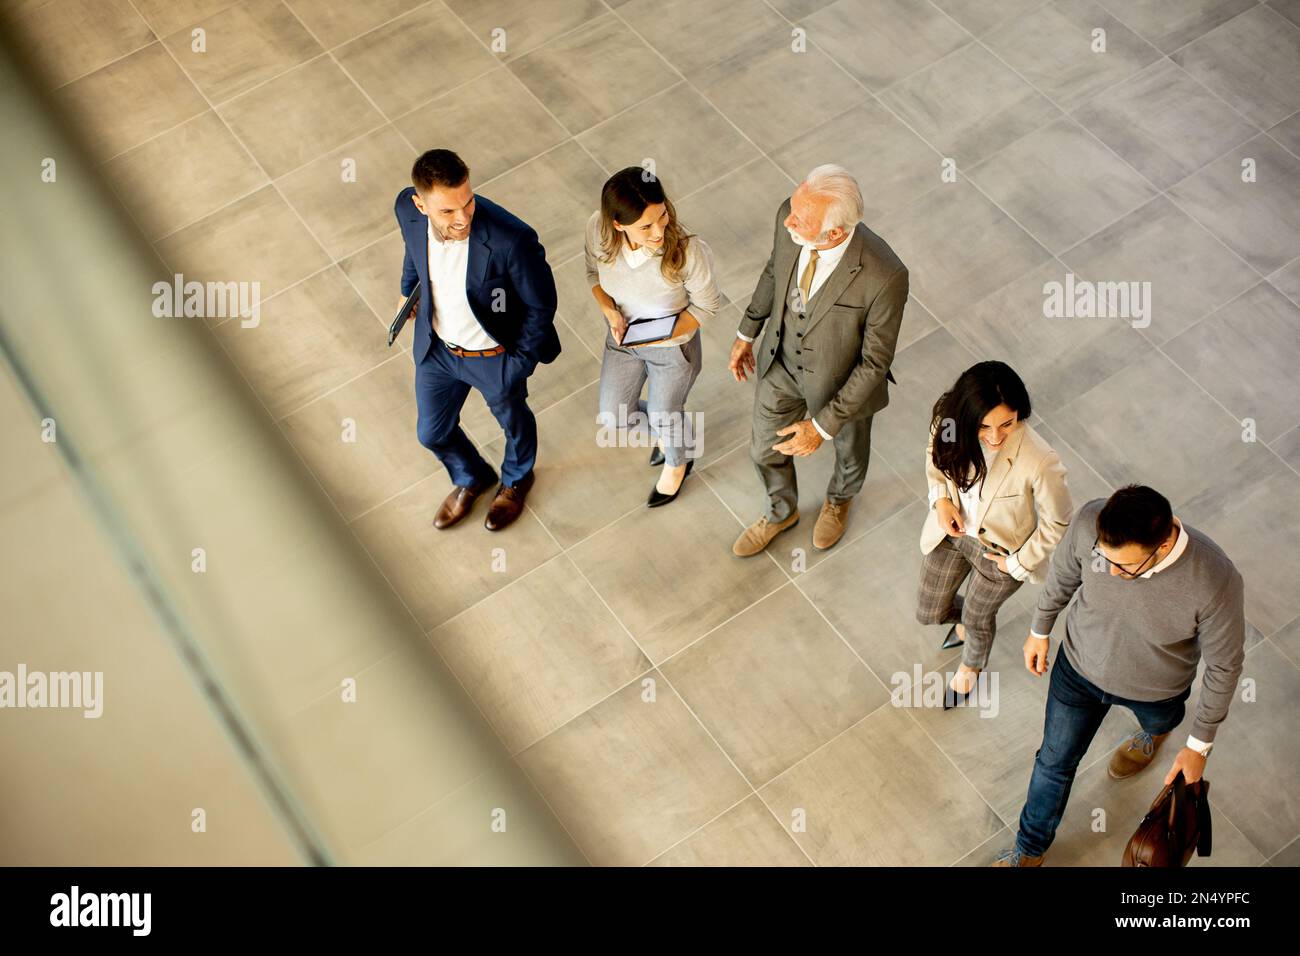 Un groupe de jeunes et de personnes âgées en voyage d'affaires se prompe dans un couloir de bureau, capturé dans une vue aérienne. Ils sont vêtus d'une tenue habillée, ils marchent avec humour Banque D'Images